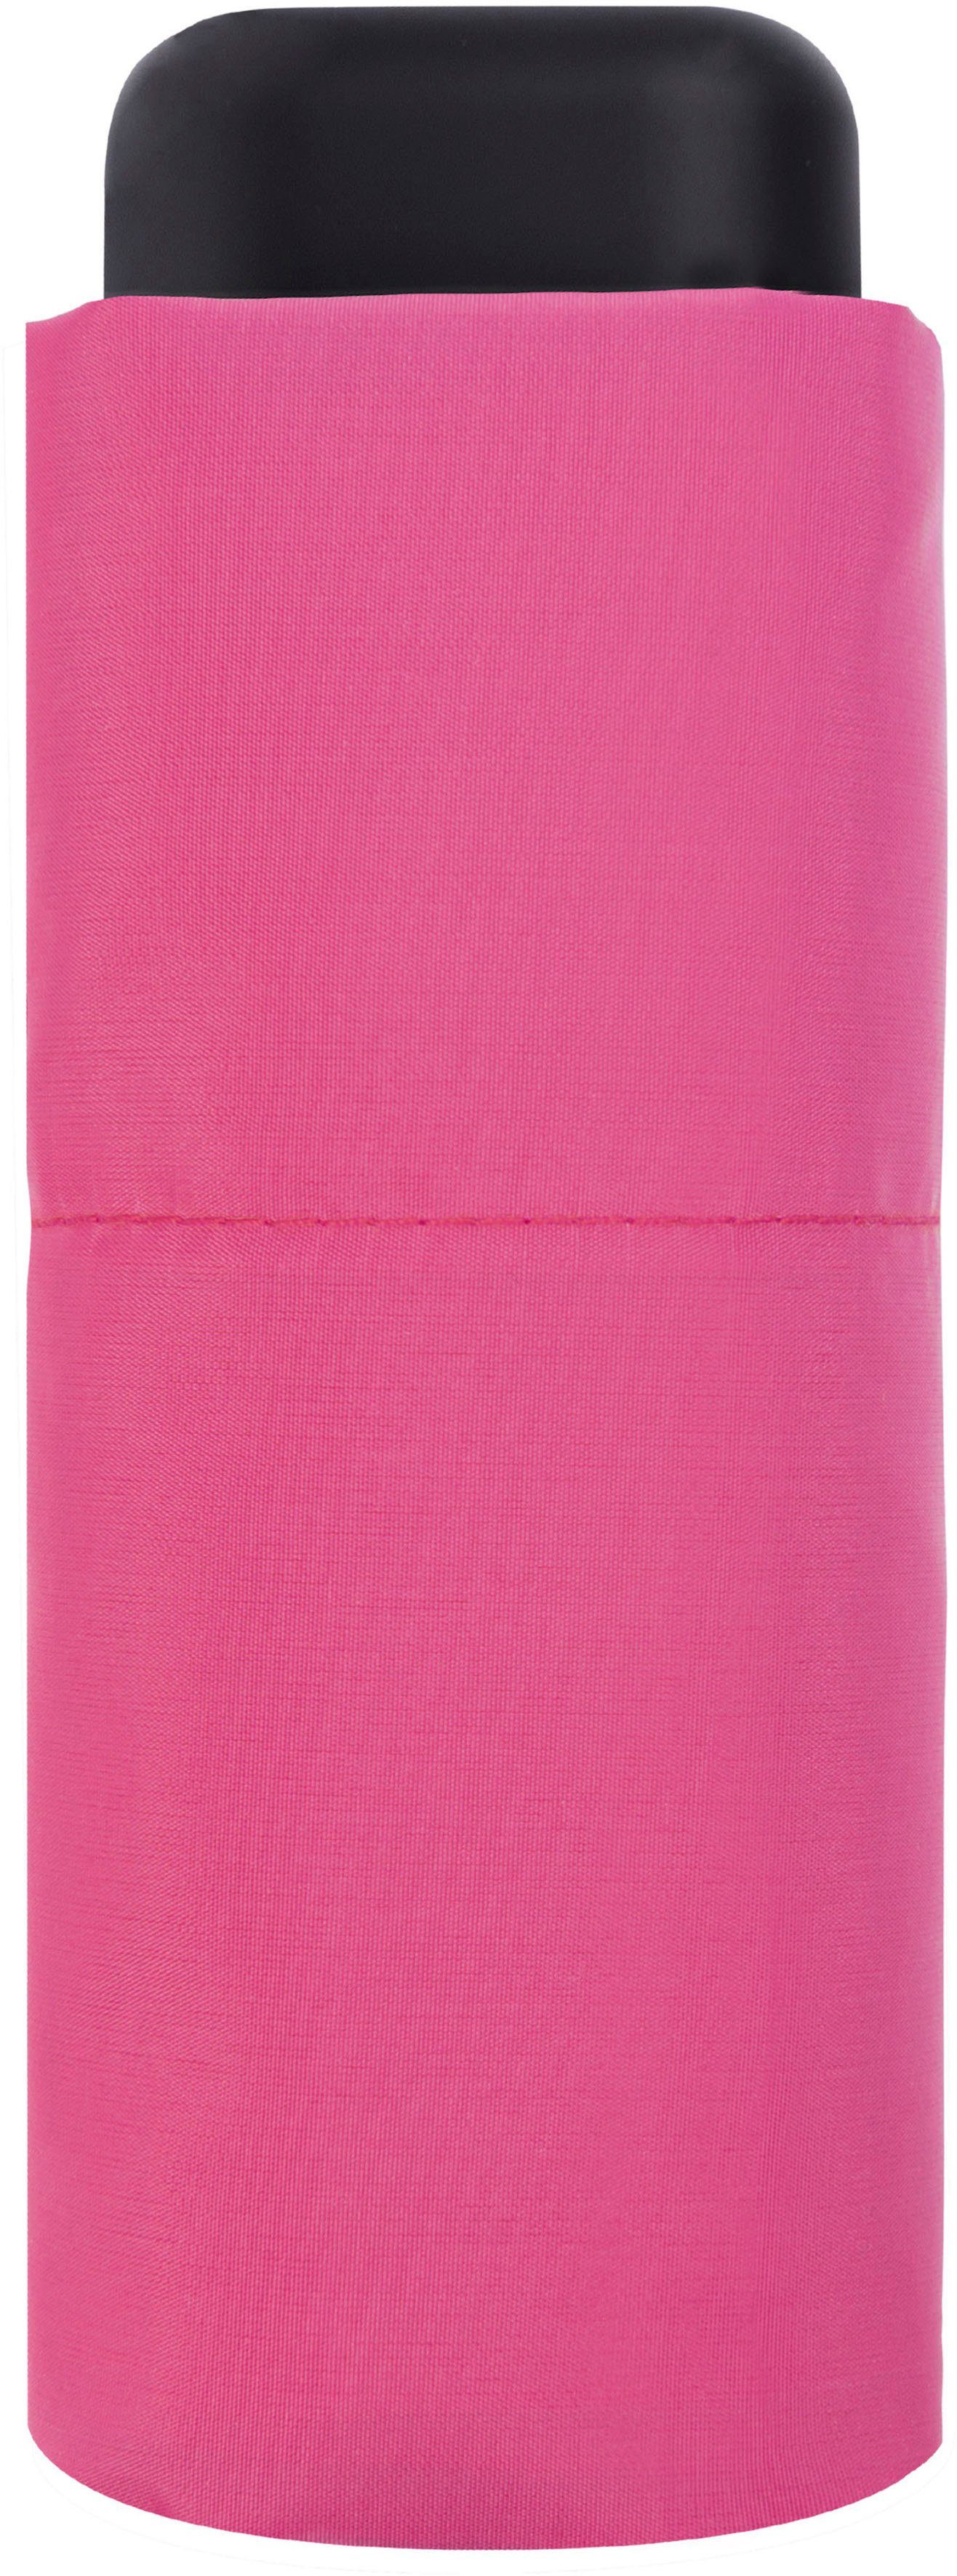 derby Micro pink Slim, Taschenregenschirm